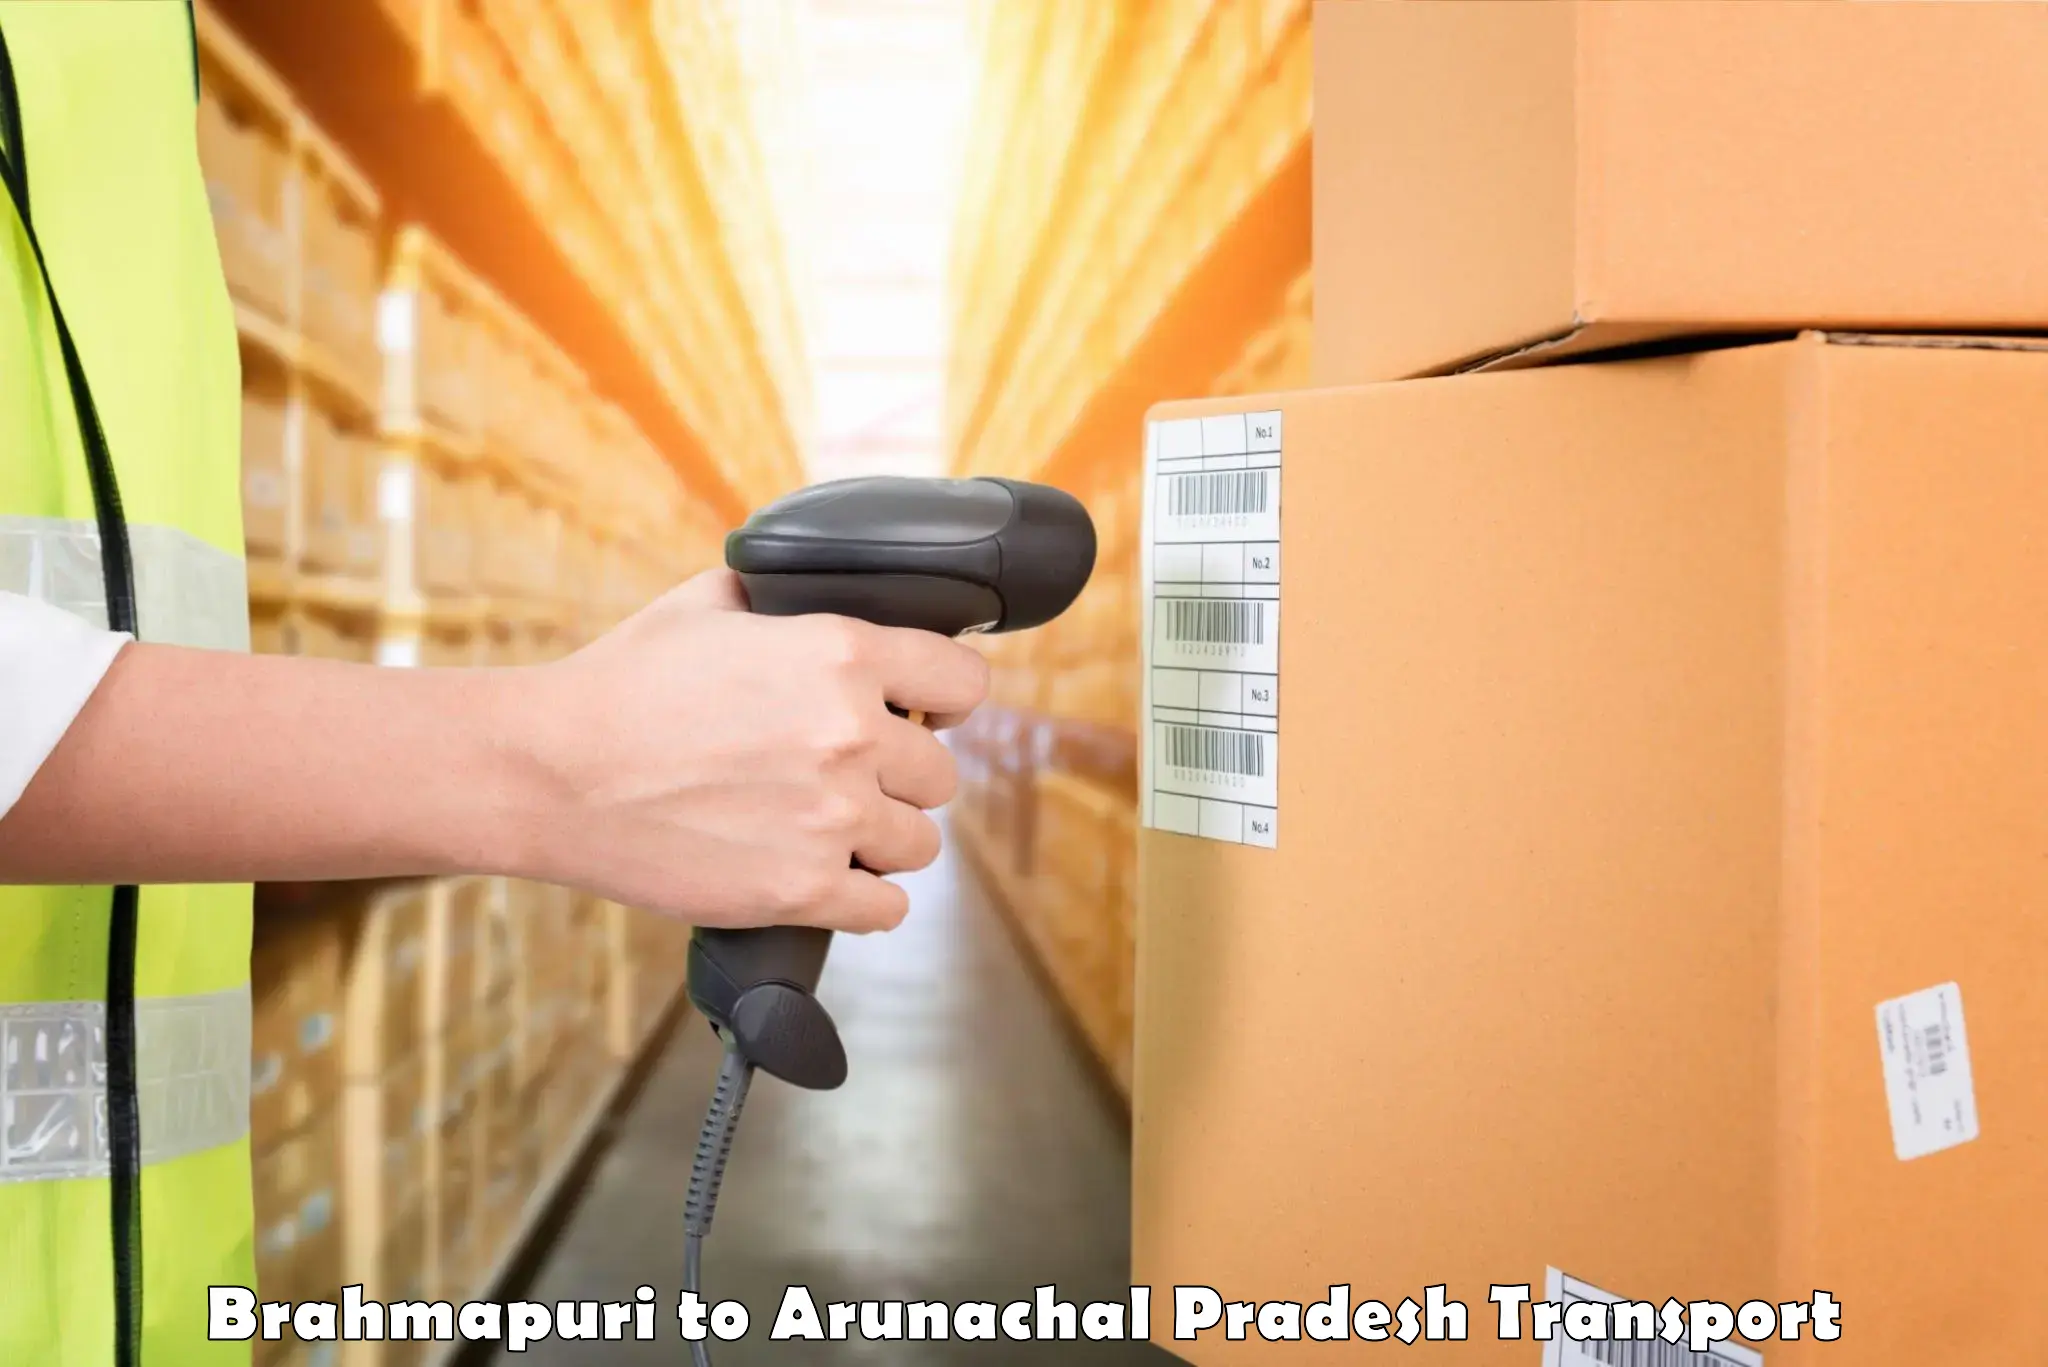 Delivery service Brahmapuri to Longding